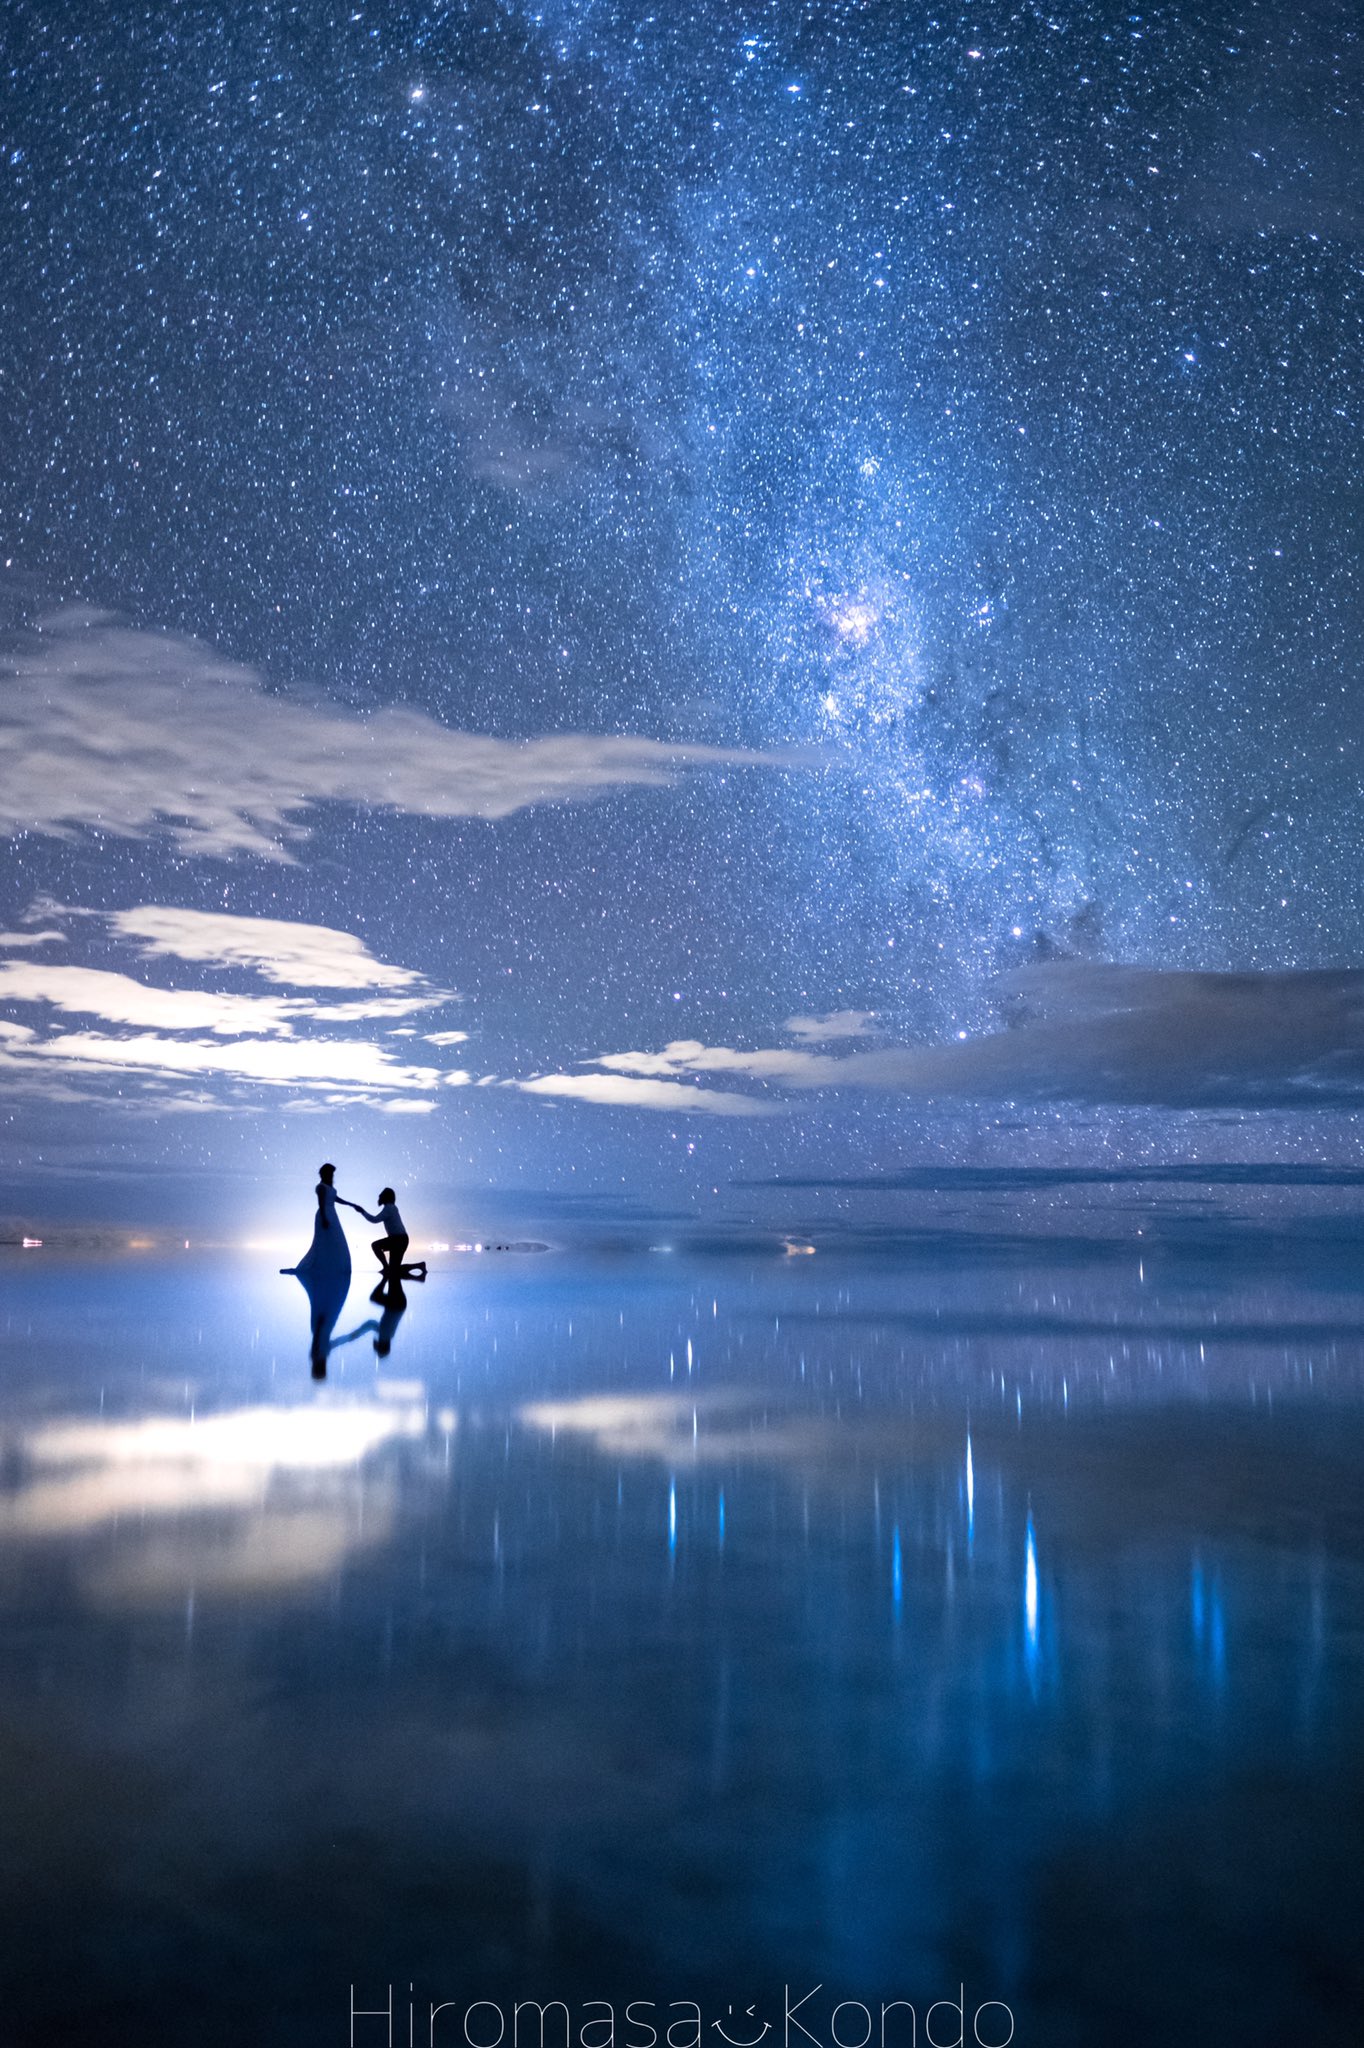 こんどー とったび ウユニ塩湖の撮影で1番感動した瞬間 星空の中で愛を誓ったふたり Lovegraph T Co Lyq7ormid5 Twitter